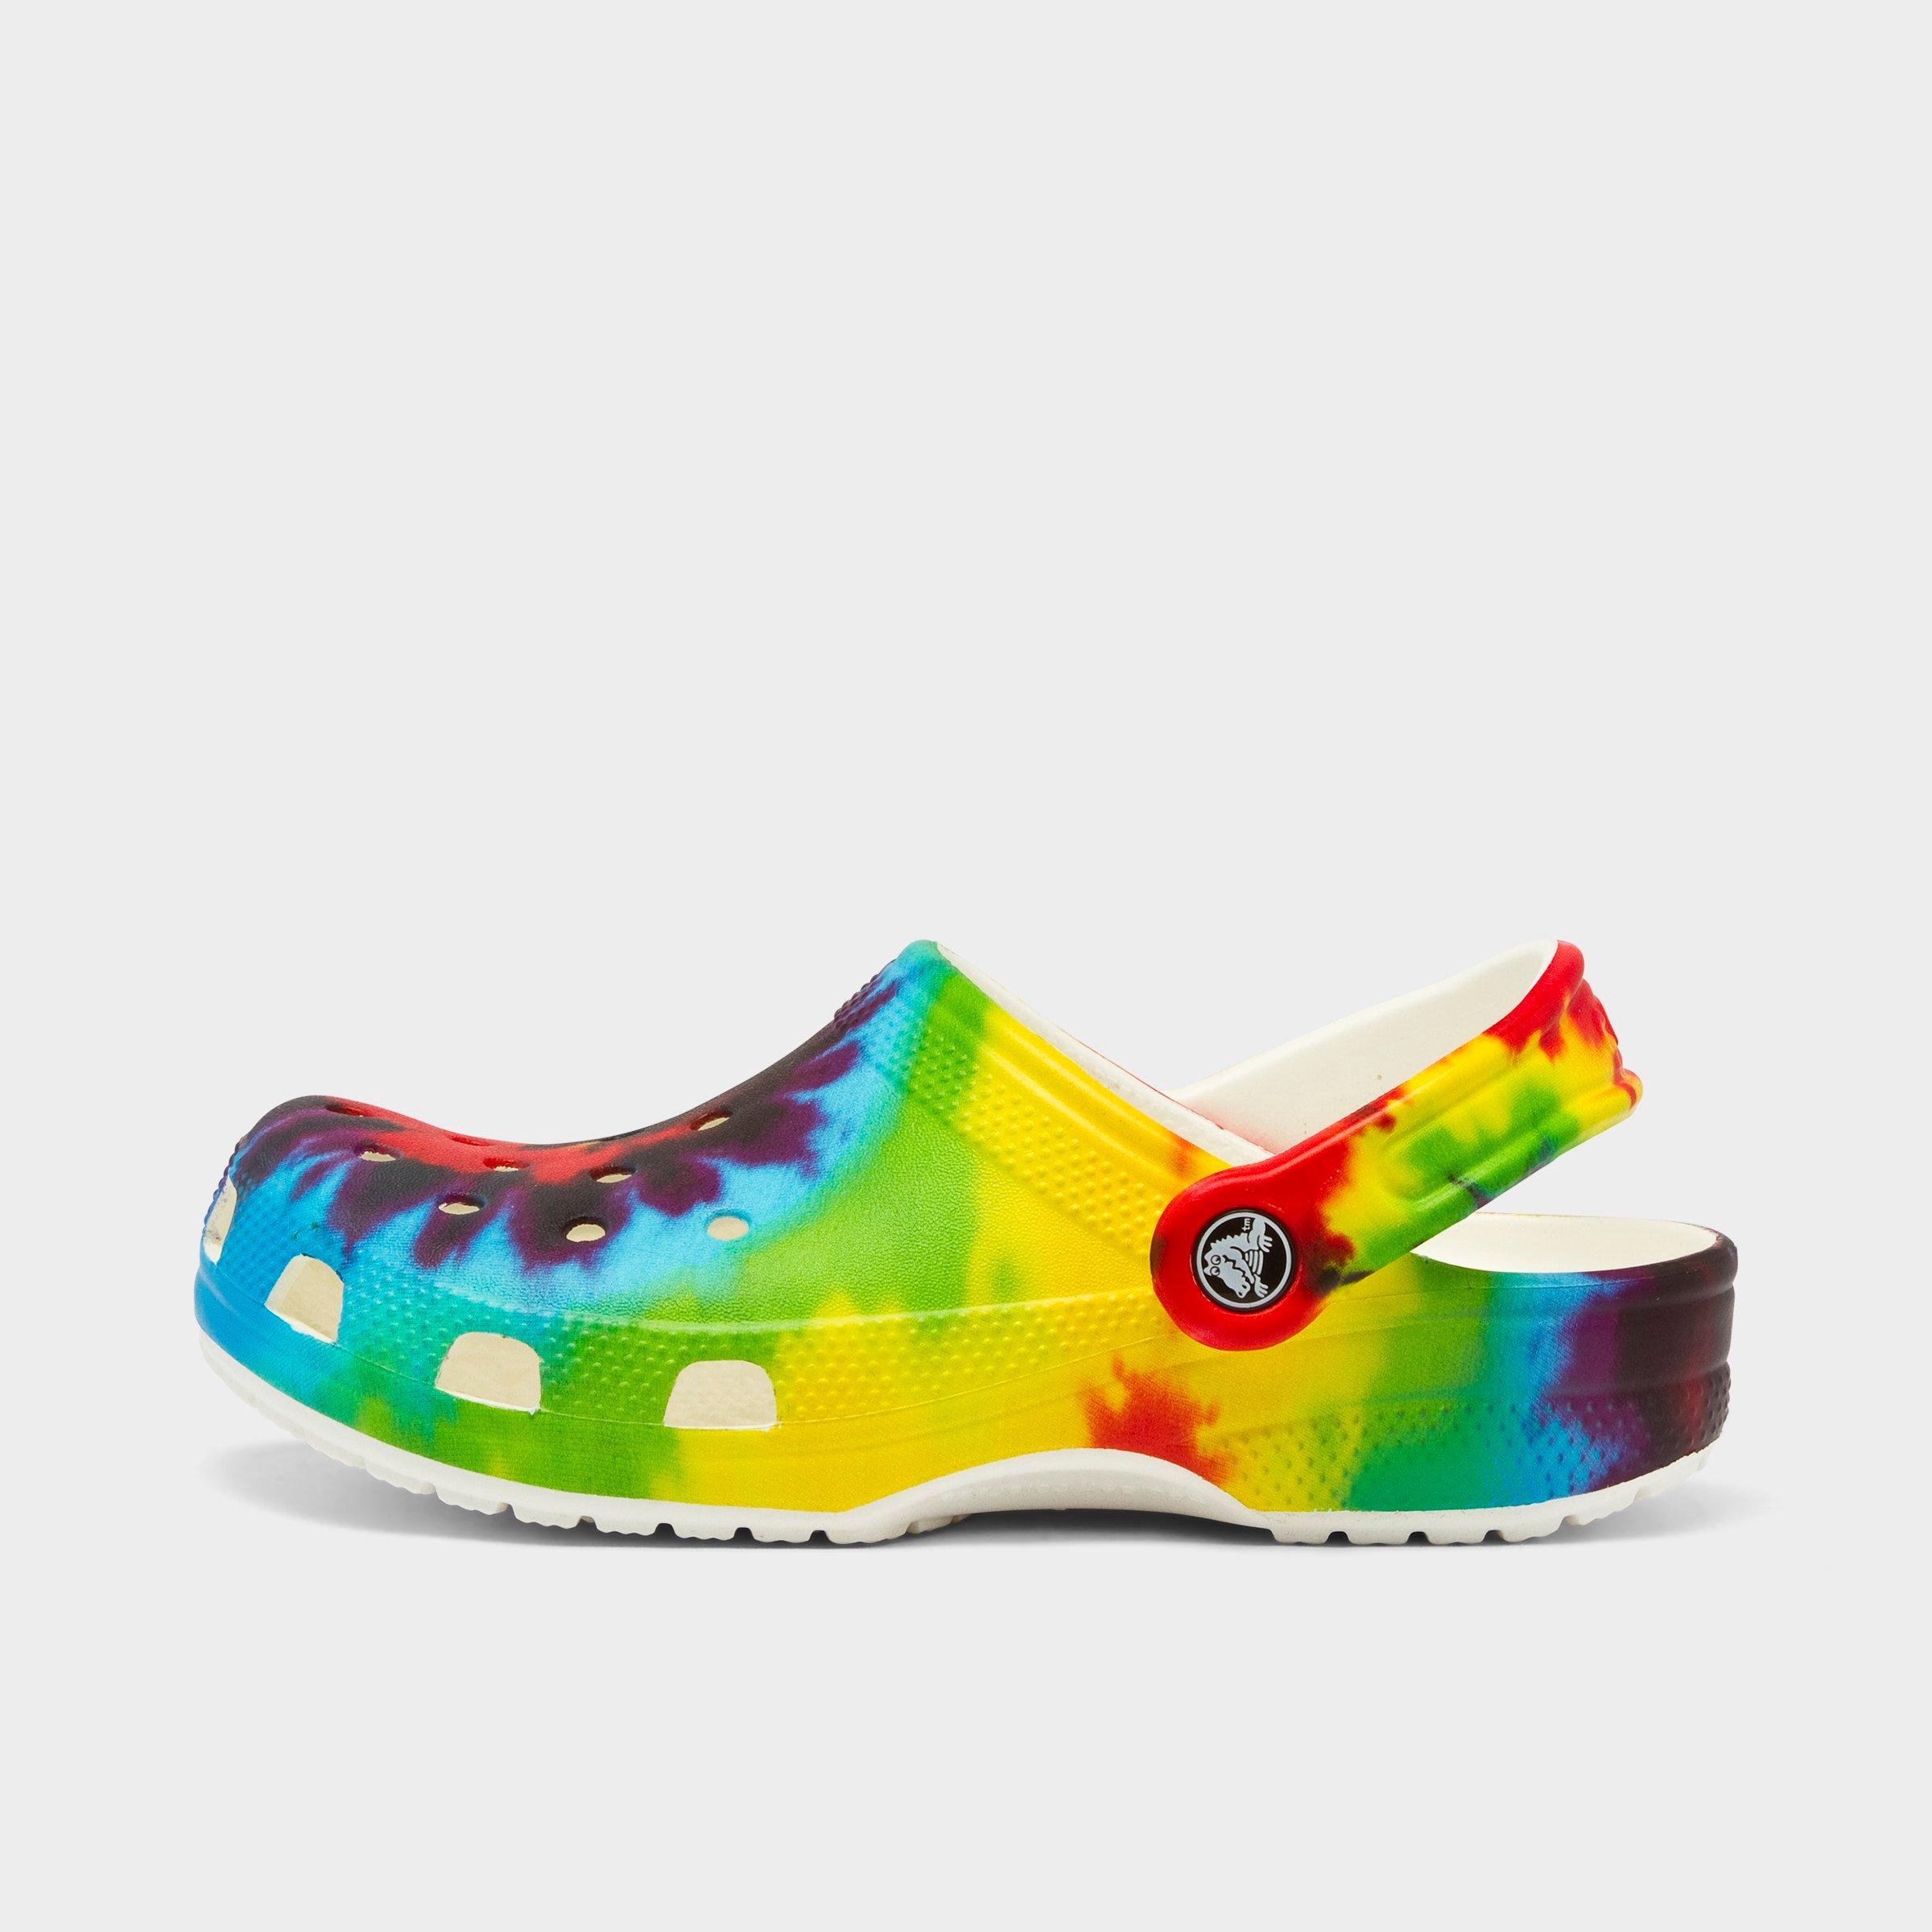 colorful crocs shoes